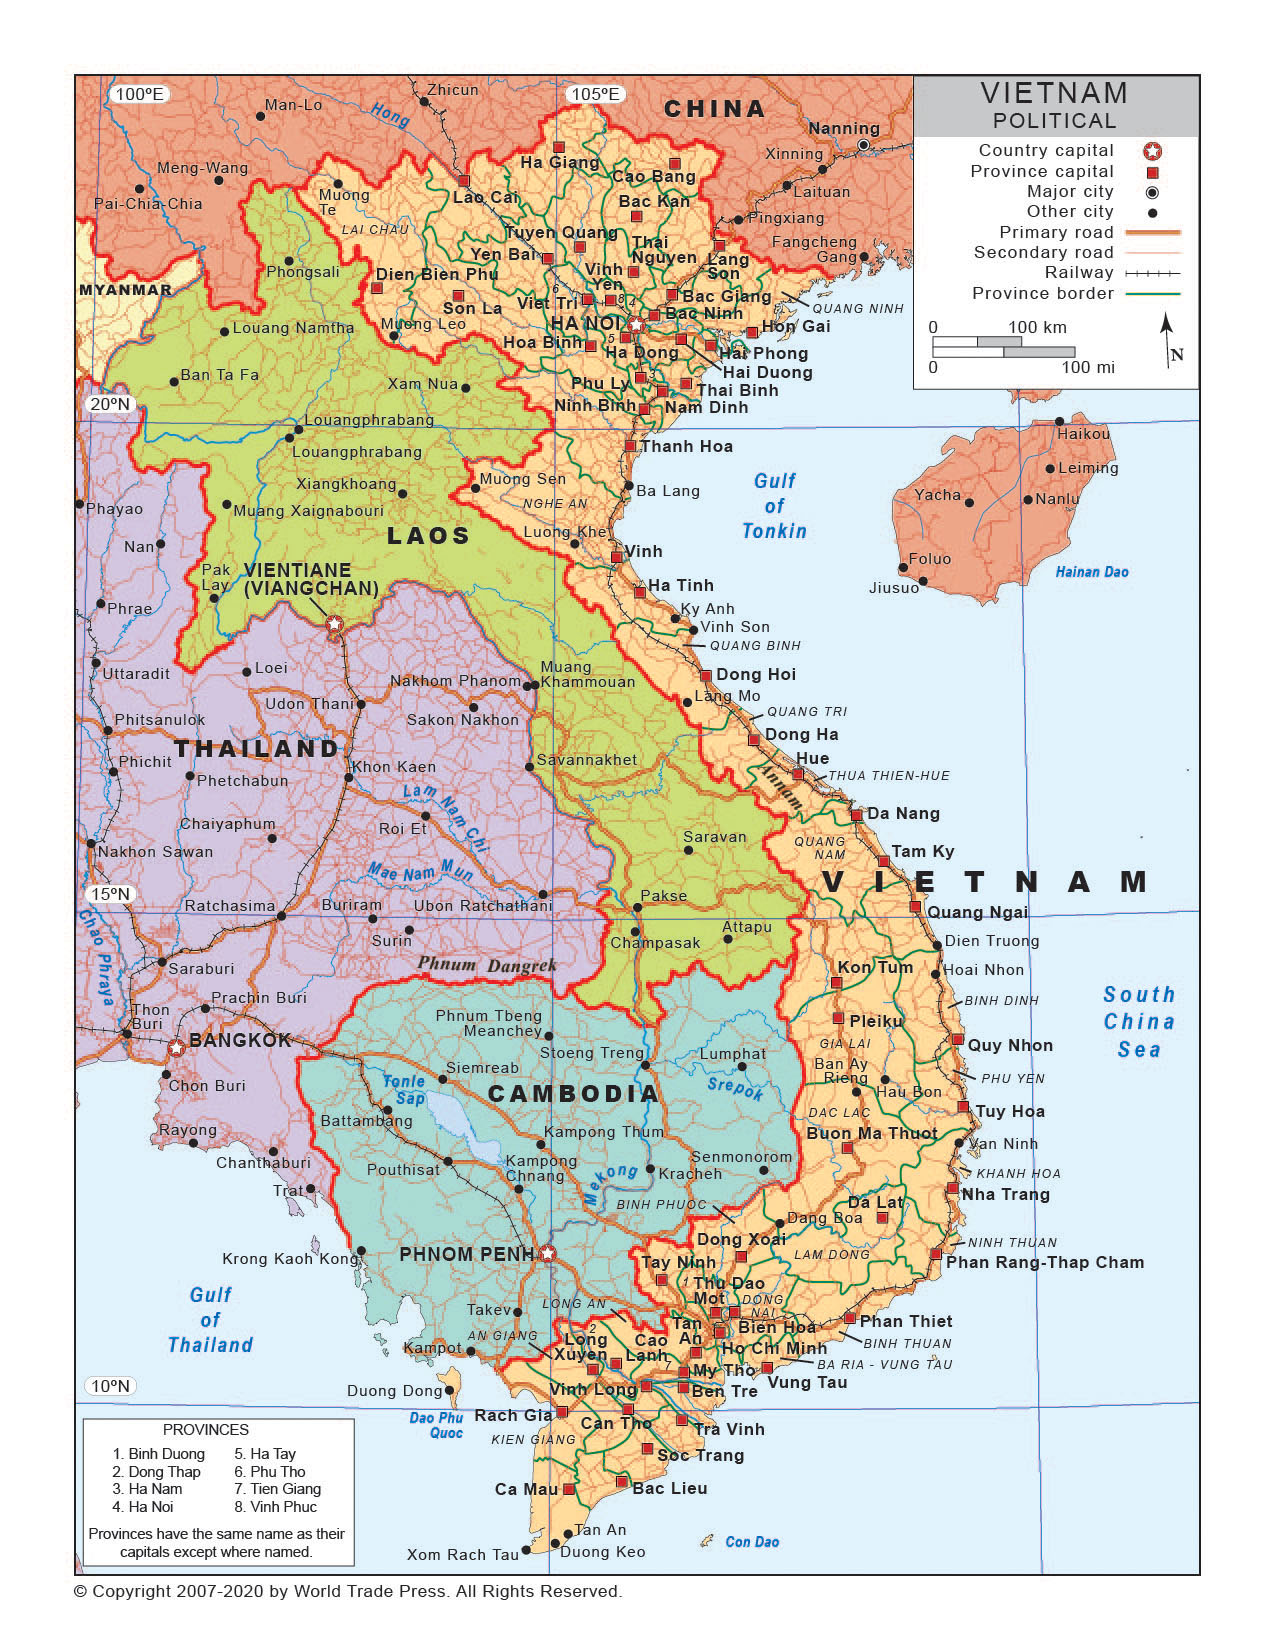 Political Map of Vietnam